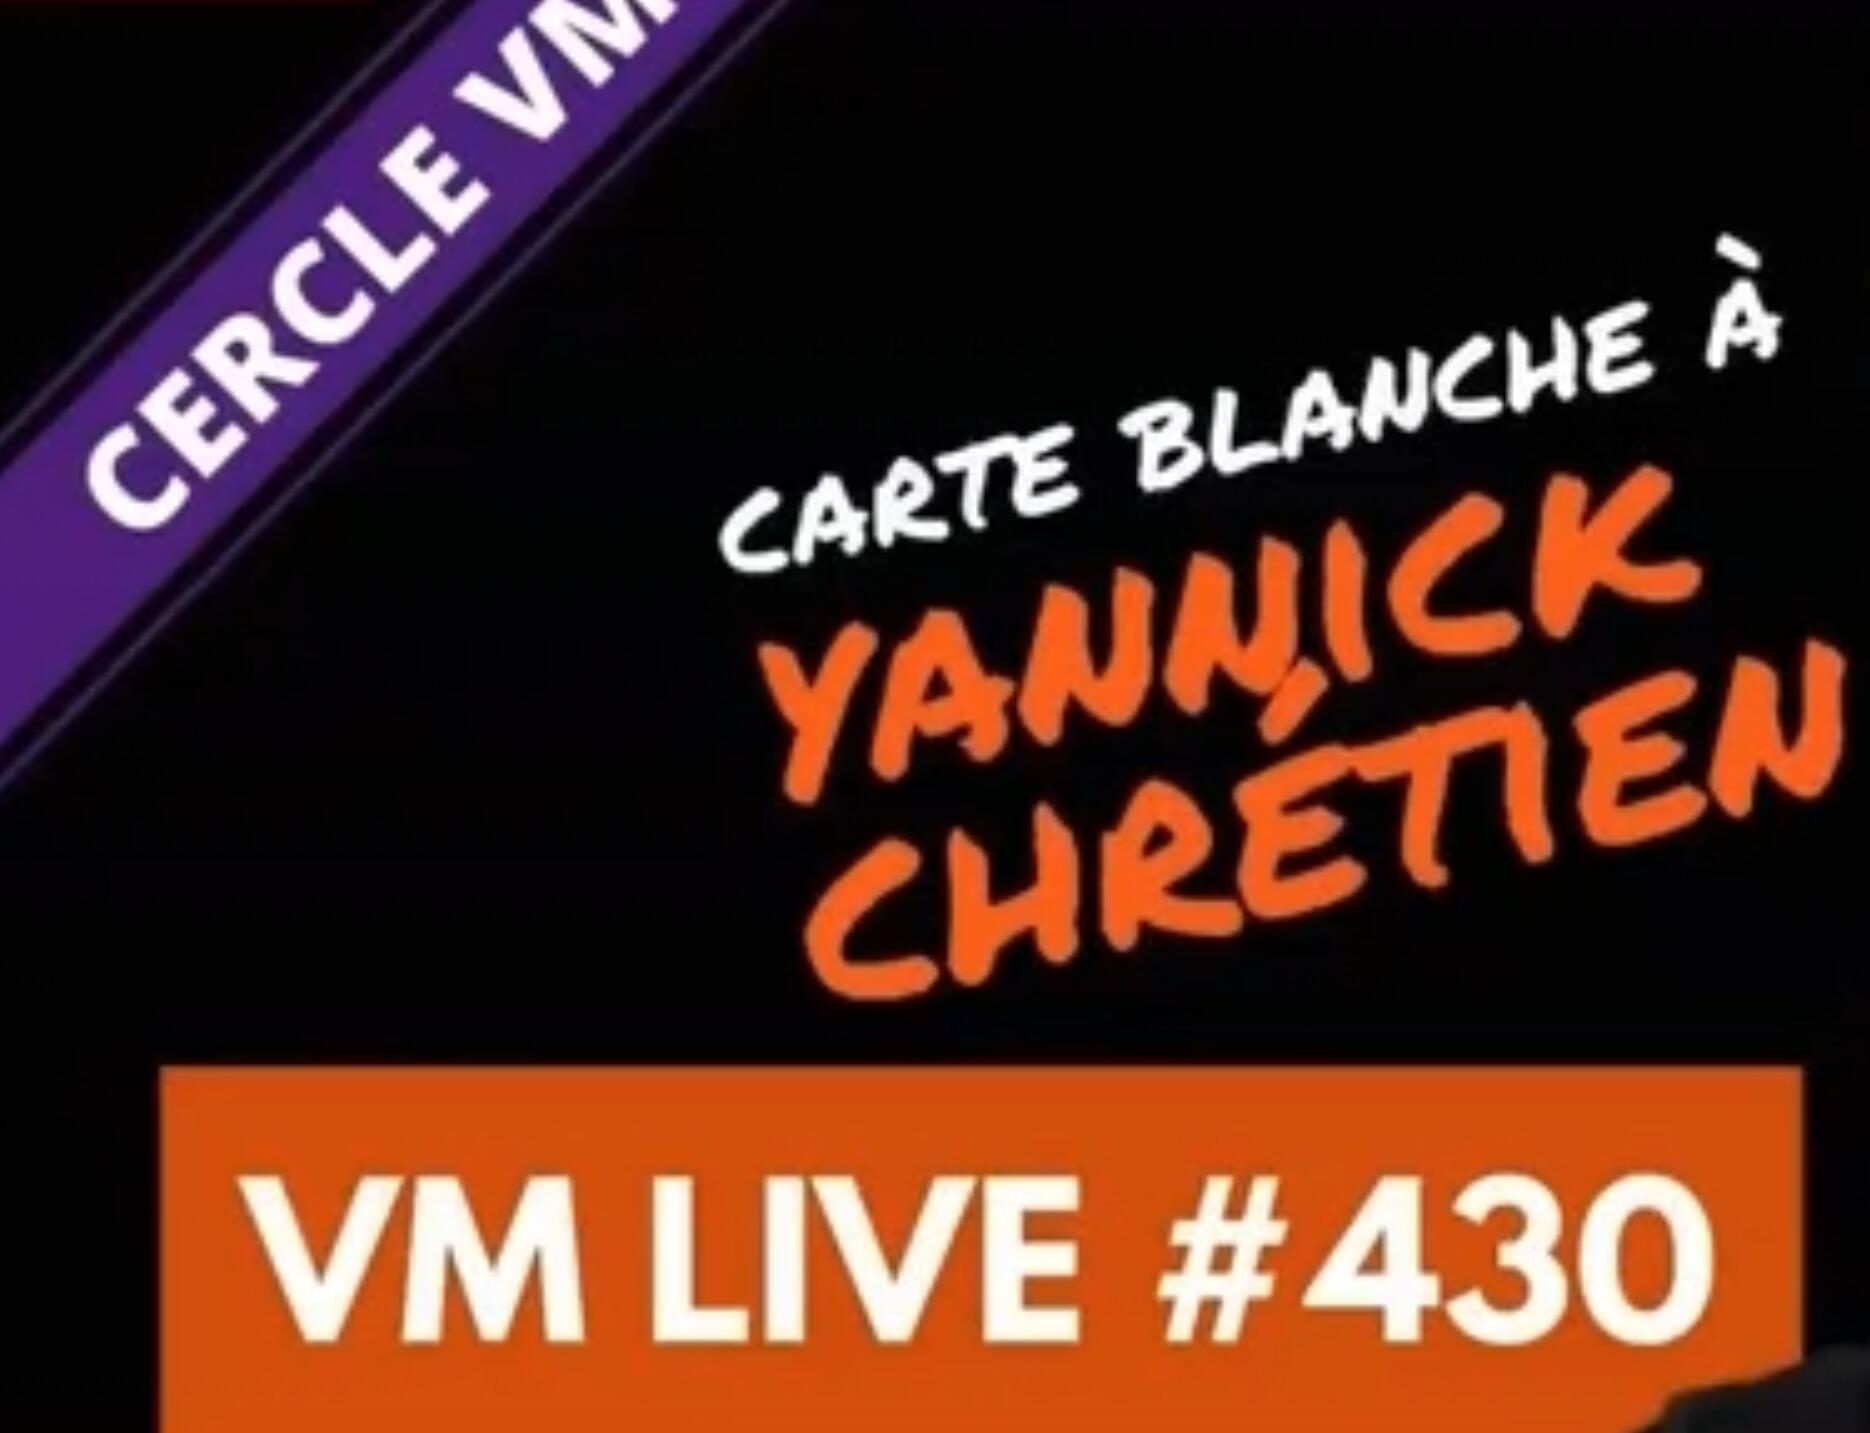 VM Live #430 Carte Blanche a Yannick Chretien